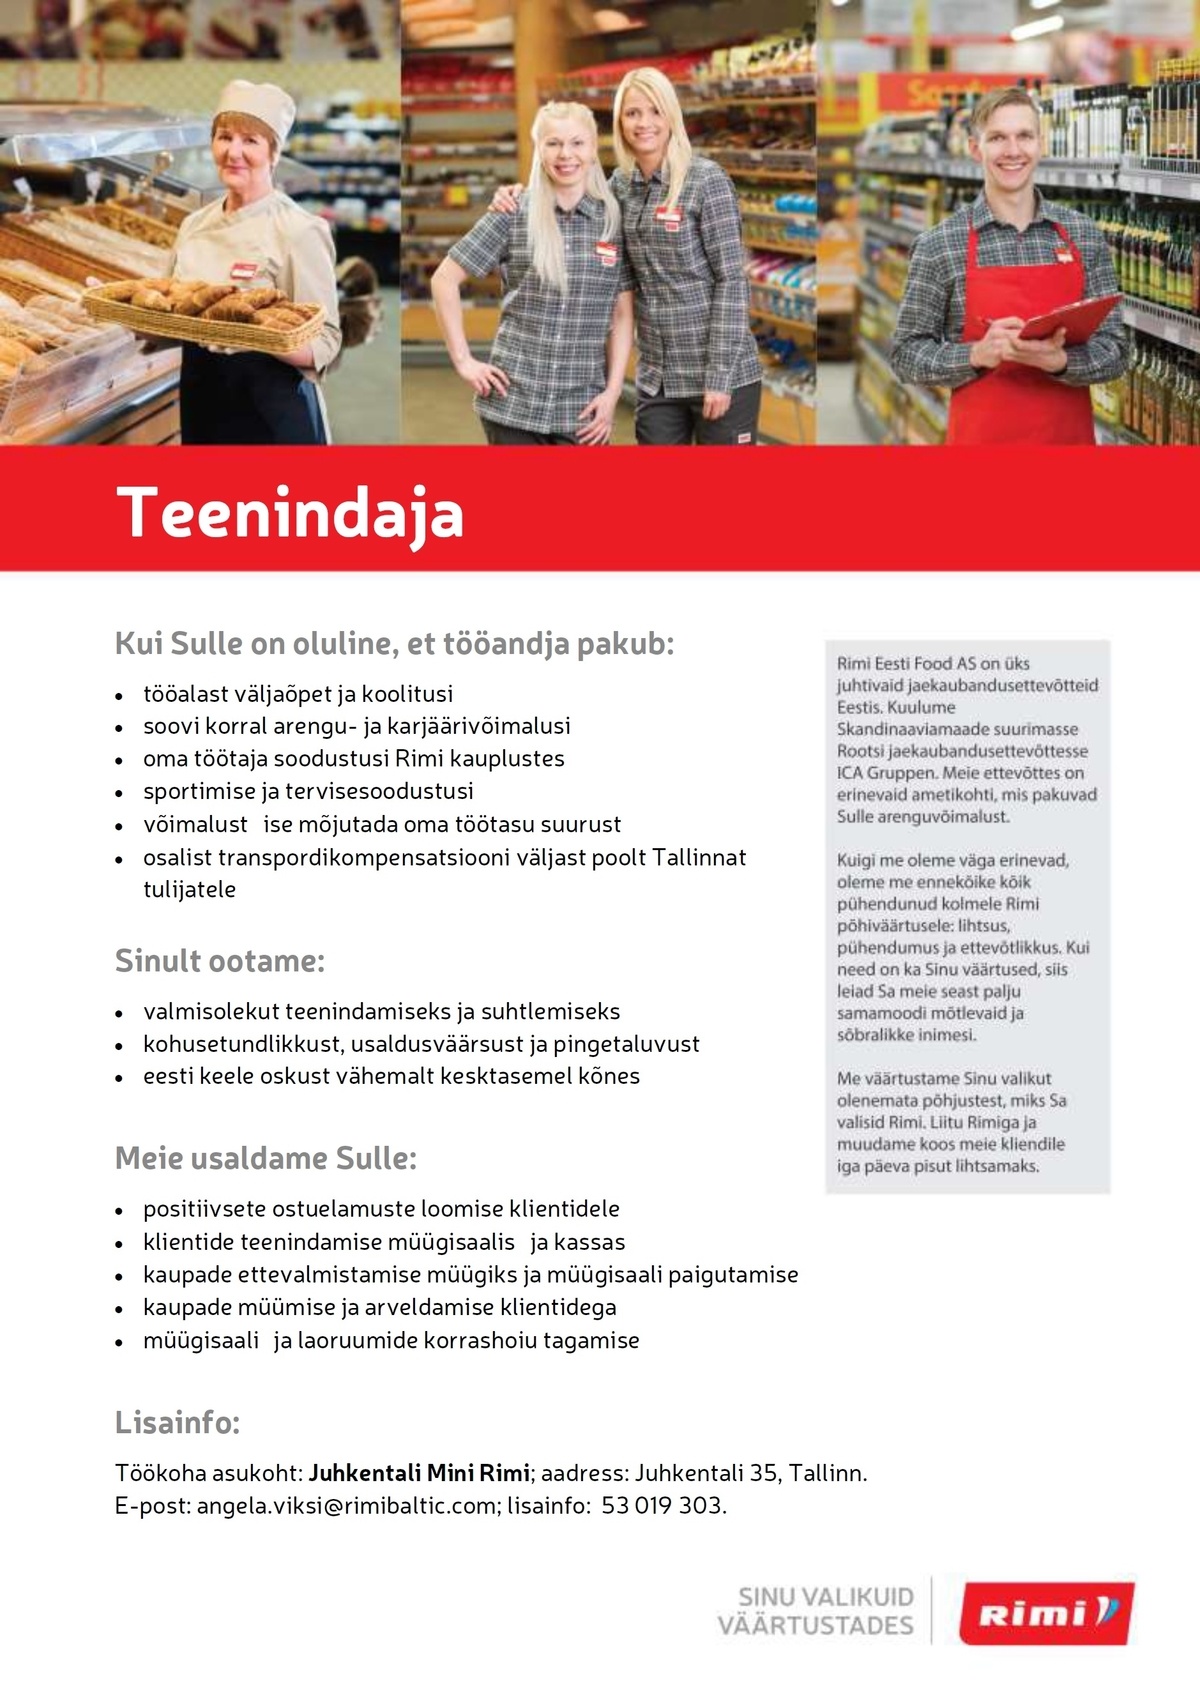 Rimi Eesti Food AS Teenindaja Juhkentali mini-Rimis